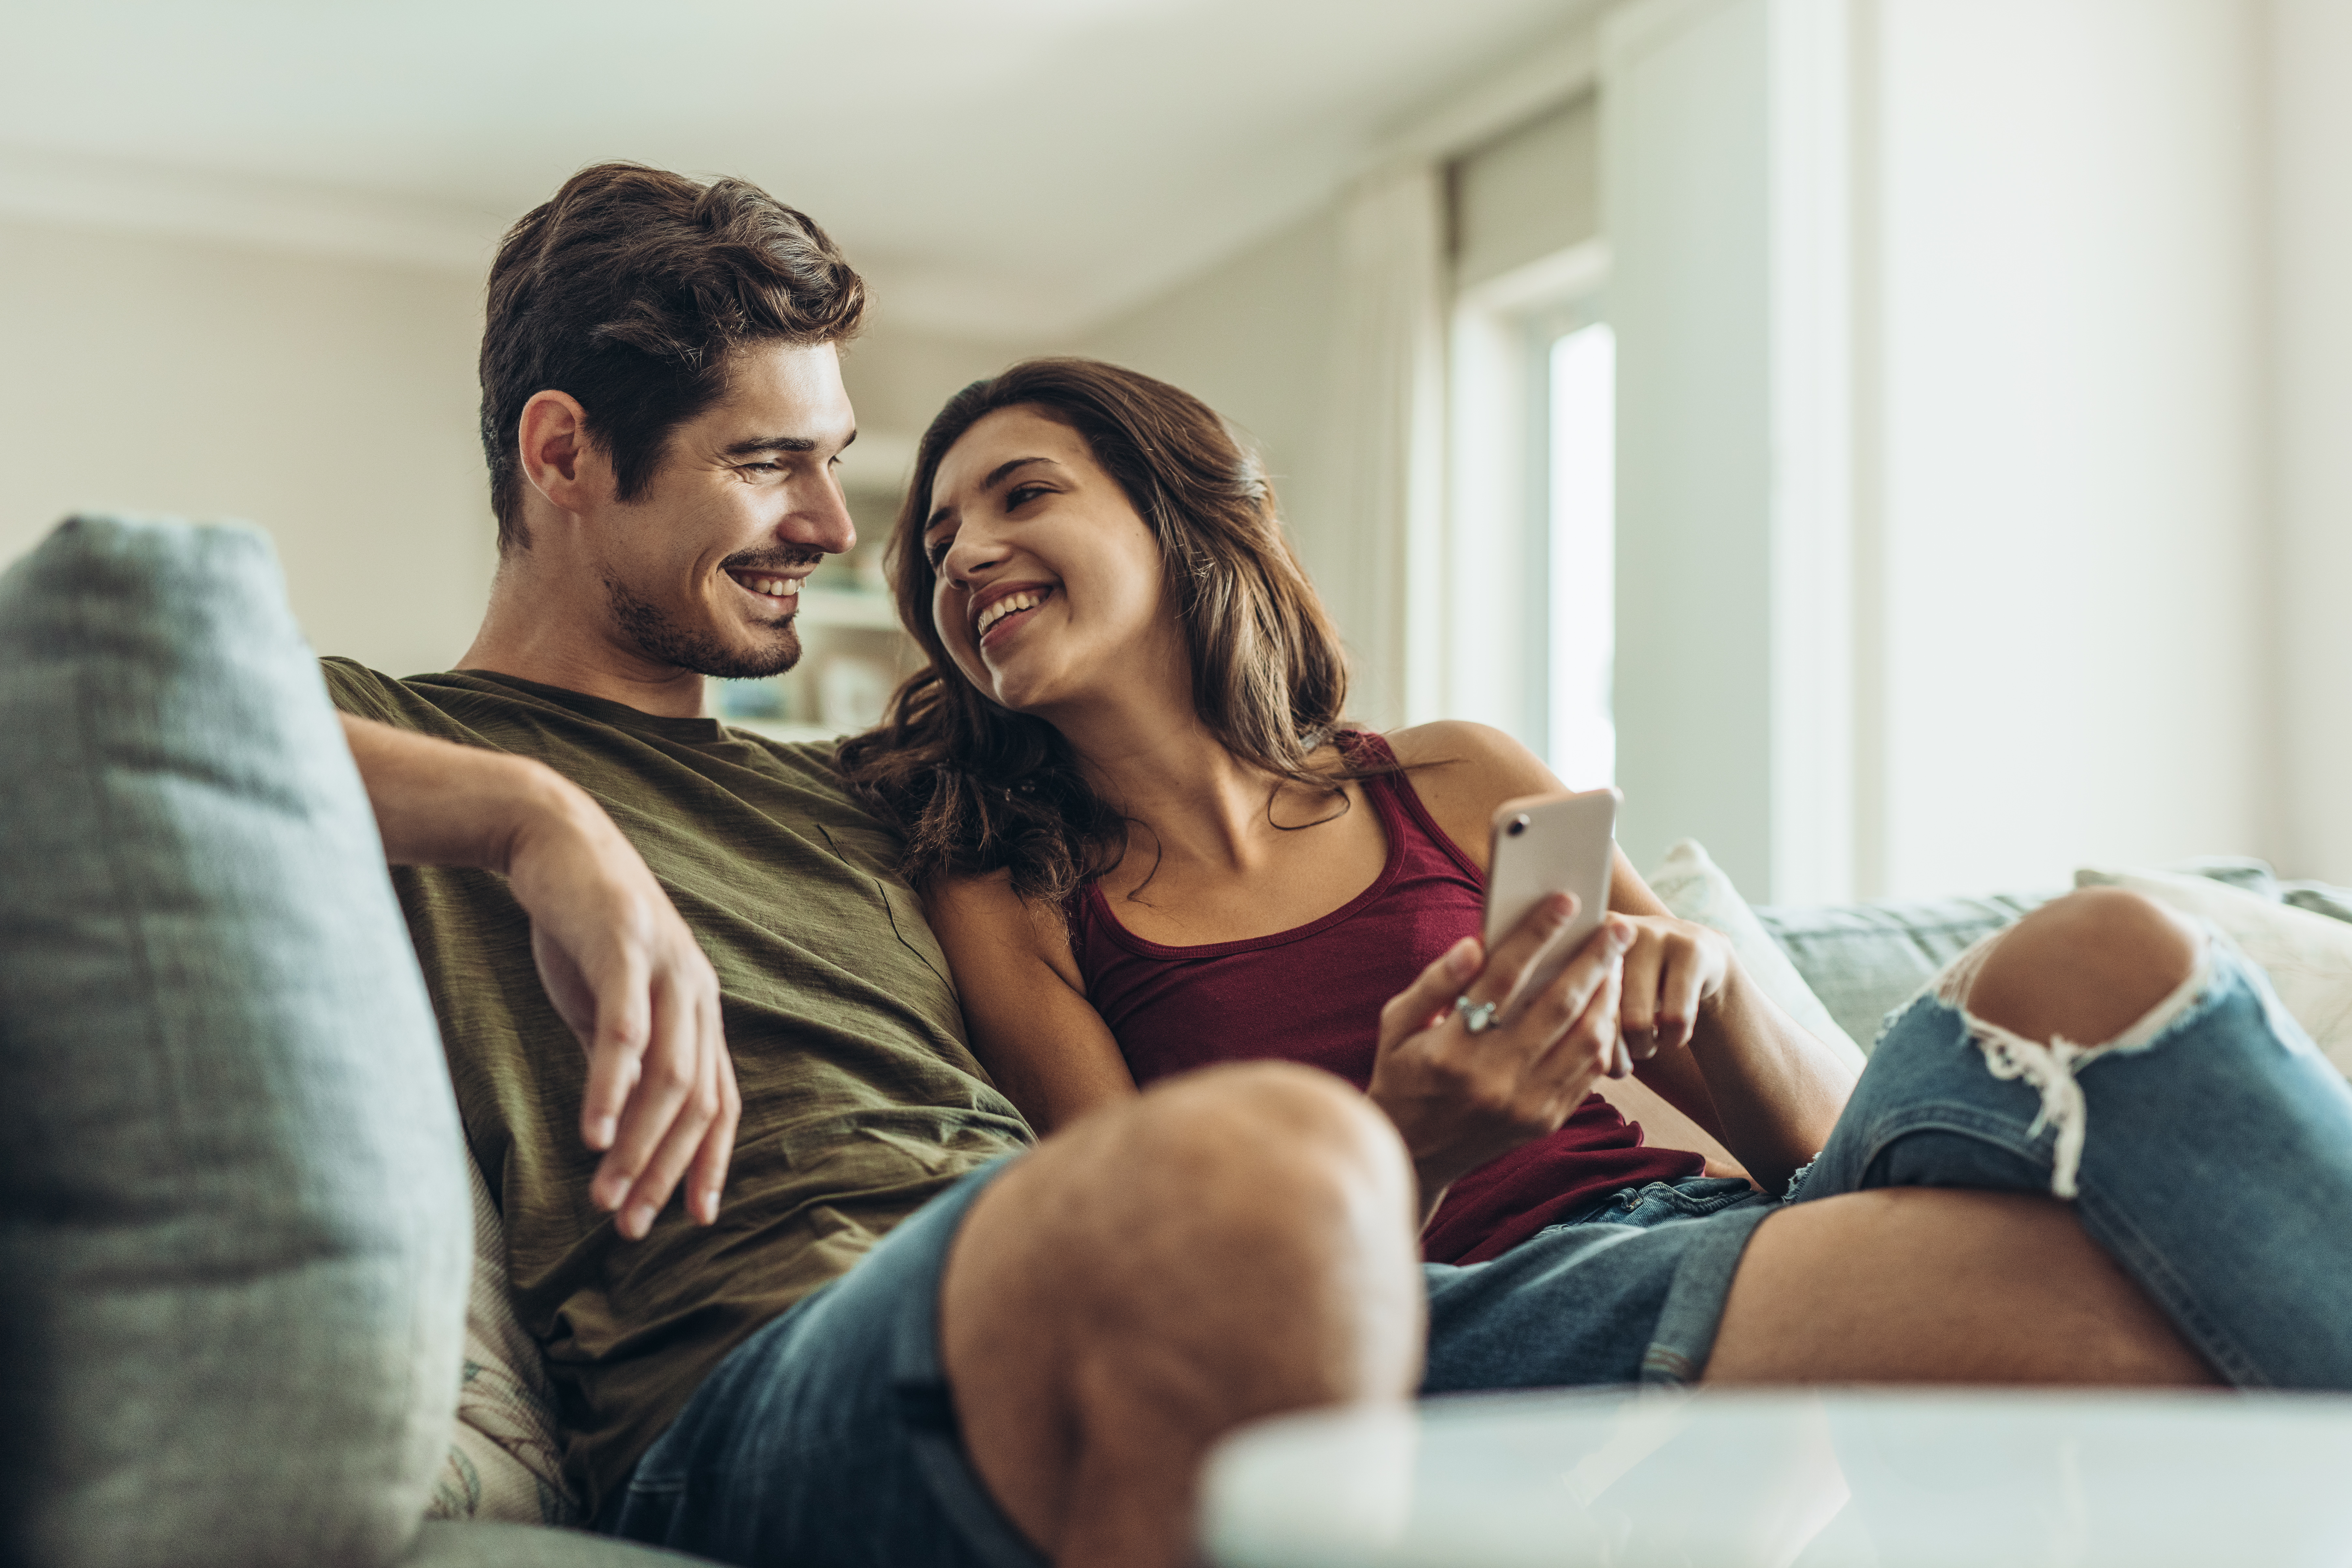 Una pareja feliz sonriéndose en el sofá | Foto: Shutterstock